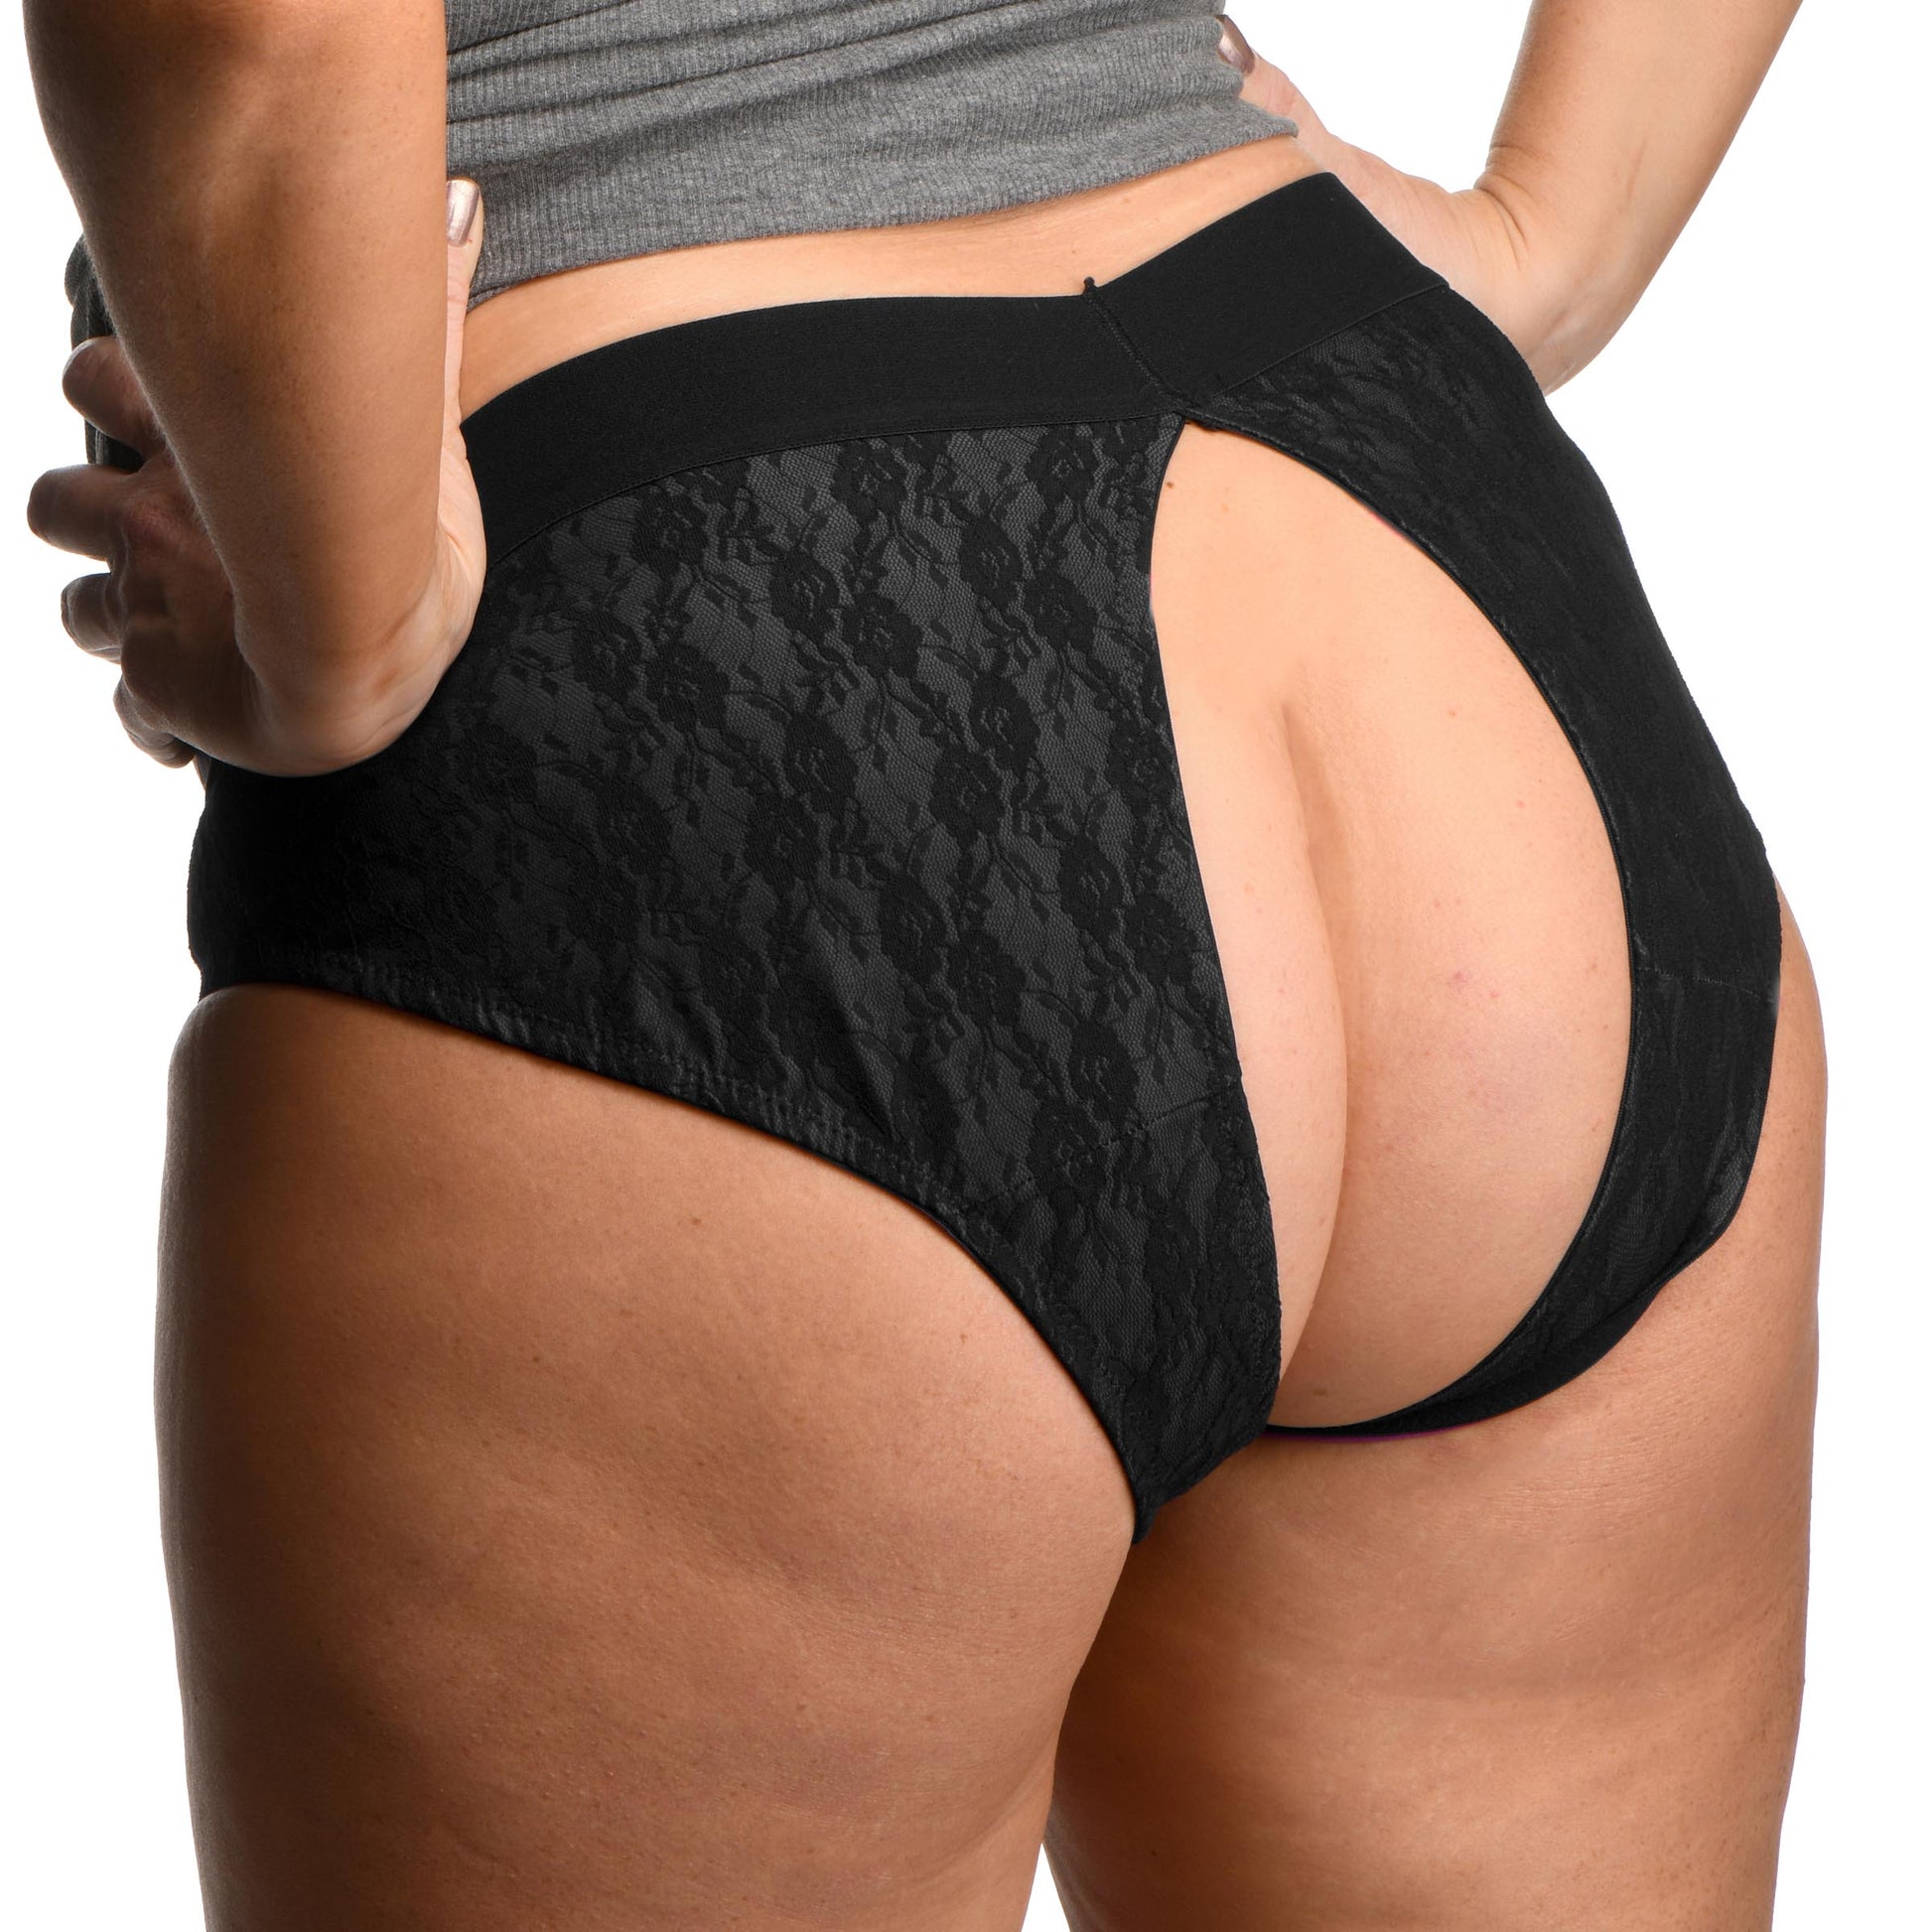 Lace Envy Black Crotchless Panty Harness - 2XL - UABDSM